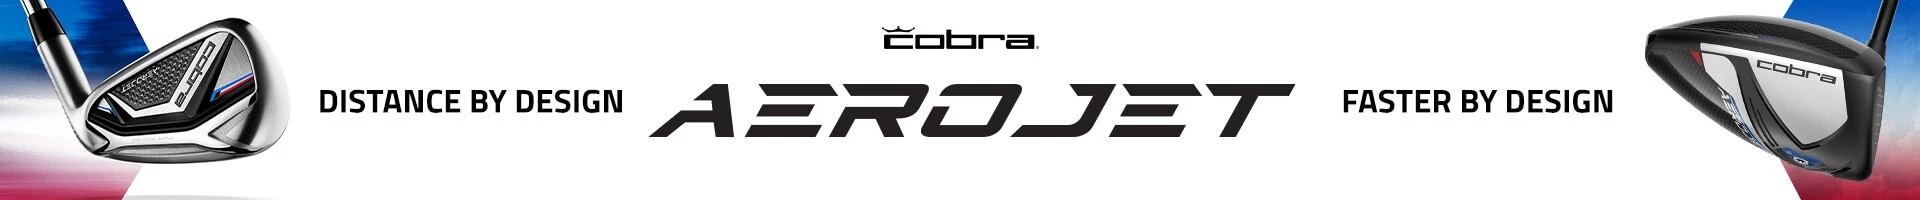 New Cobra Aerojet Golf Clubs